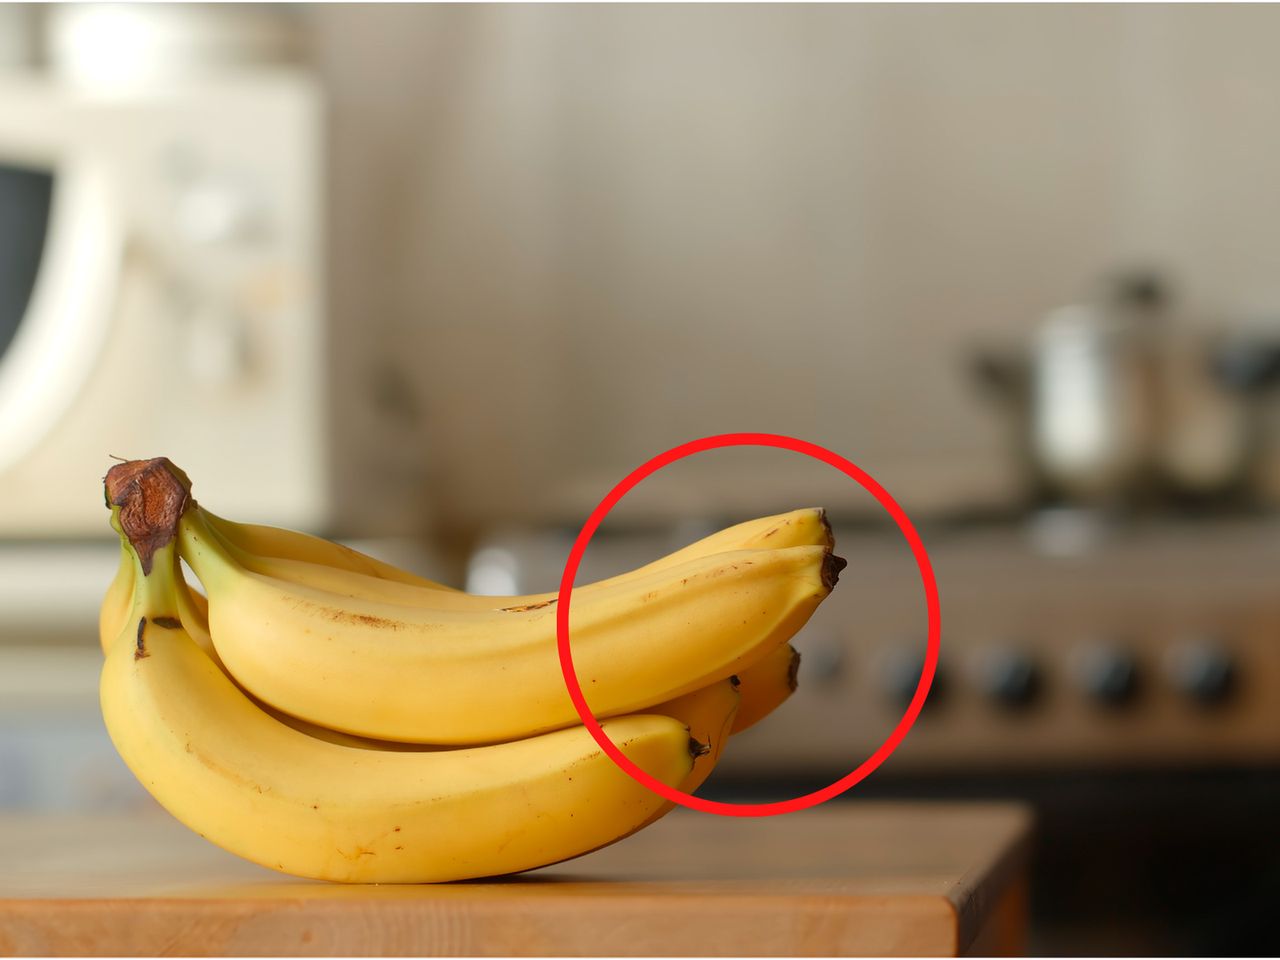 Jeść czy nie jeść? Co zrobić z czarną końcówką banana?